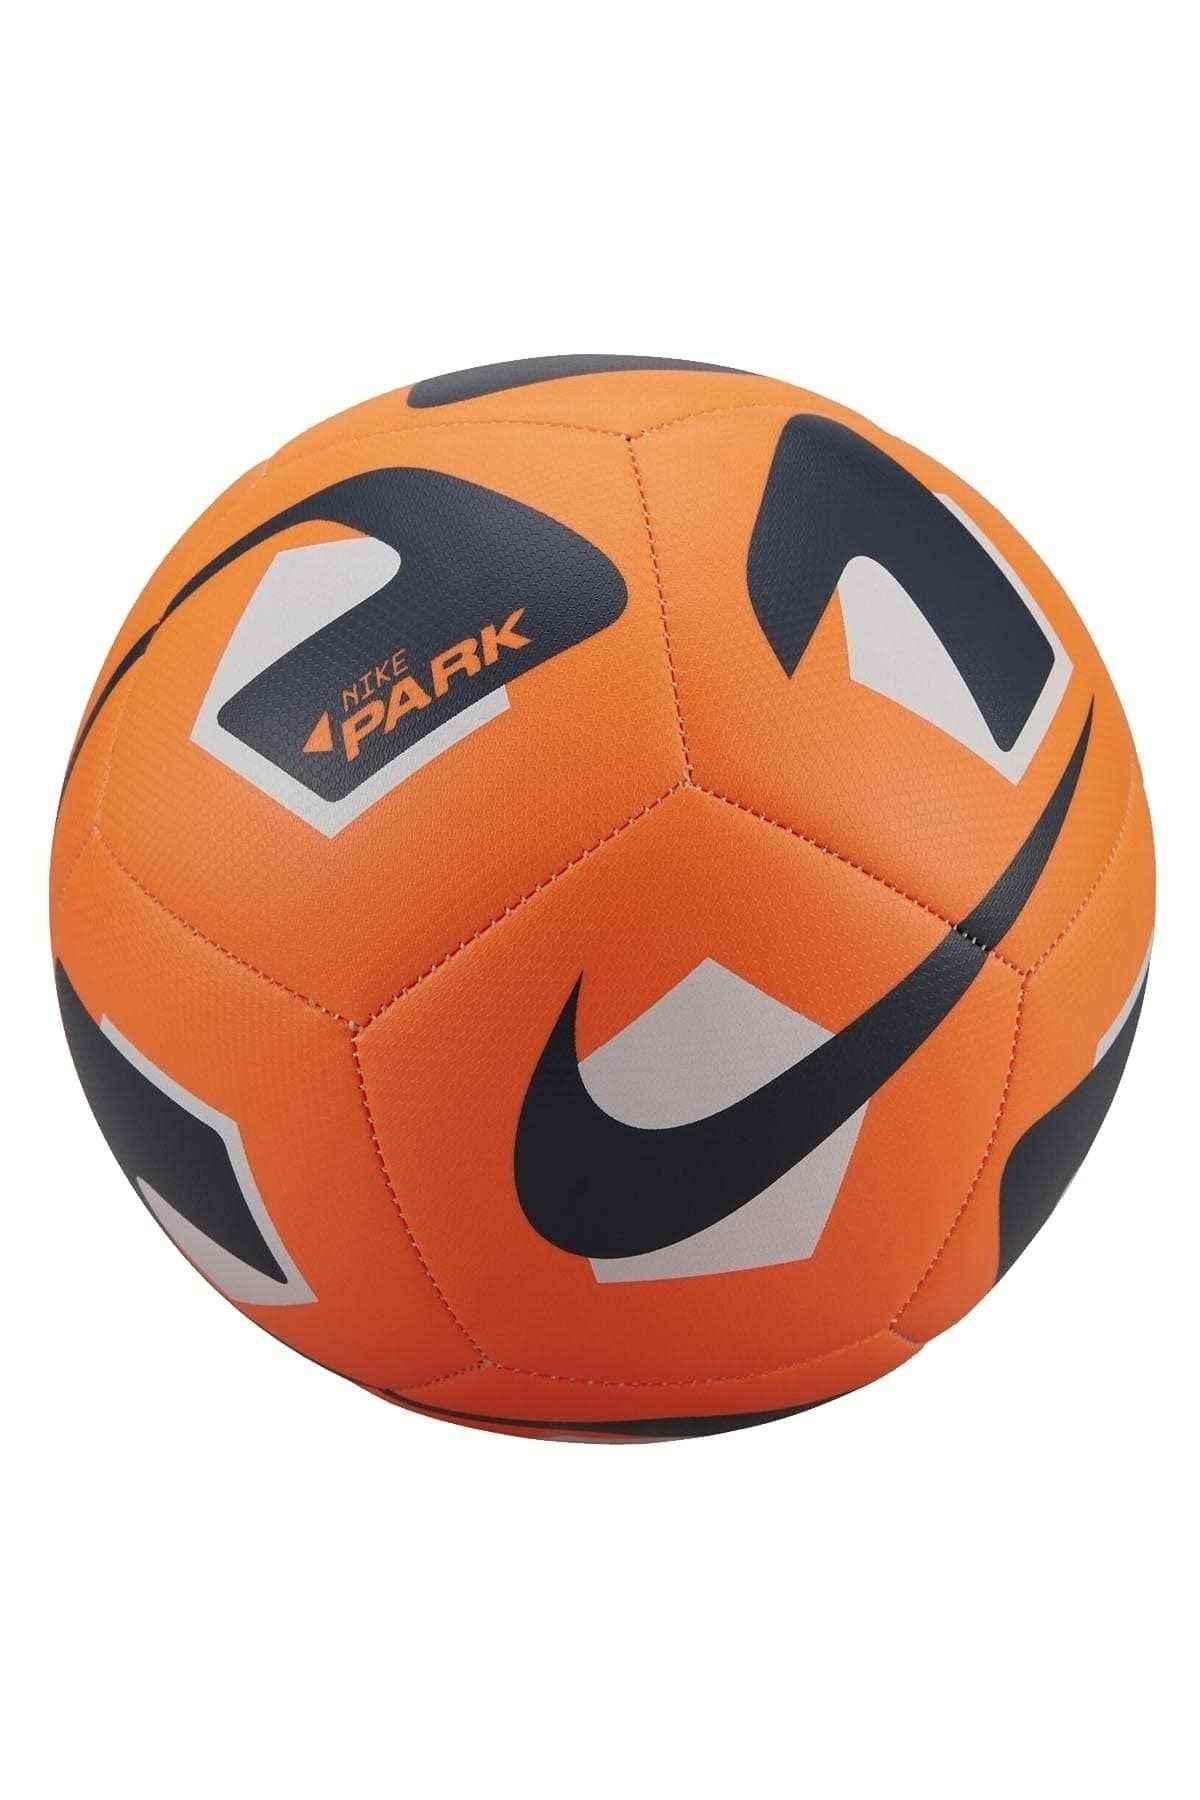 Turuncu Futbol Topu Modelleri, Fiyatları - Trendyol - Sayfa 8